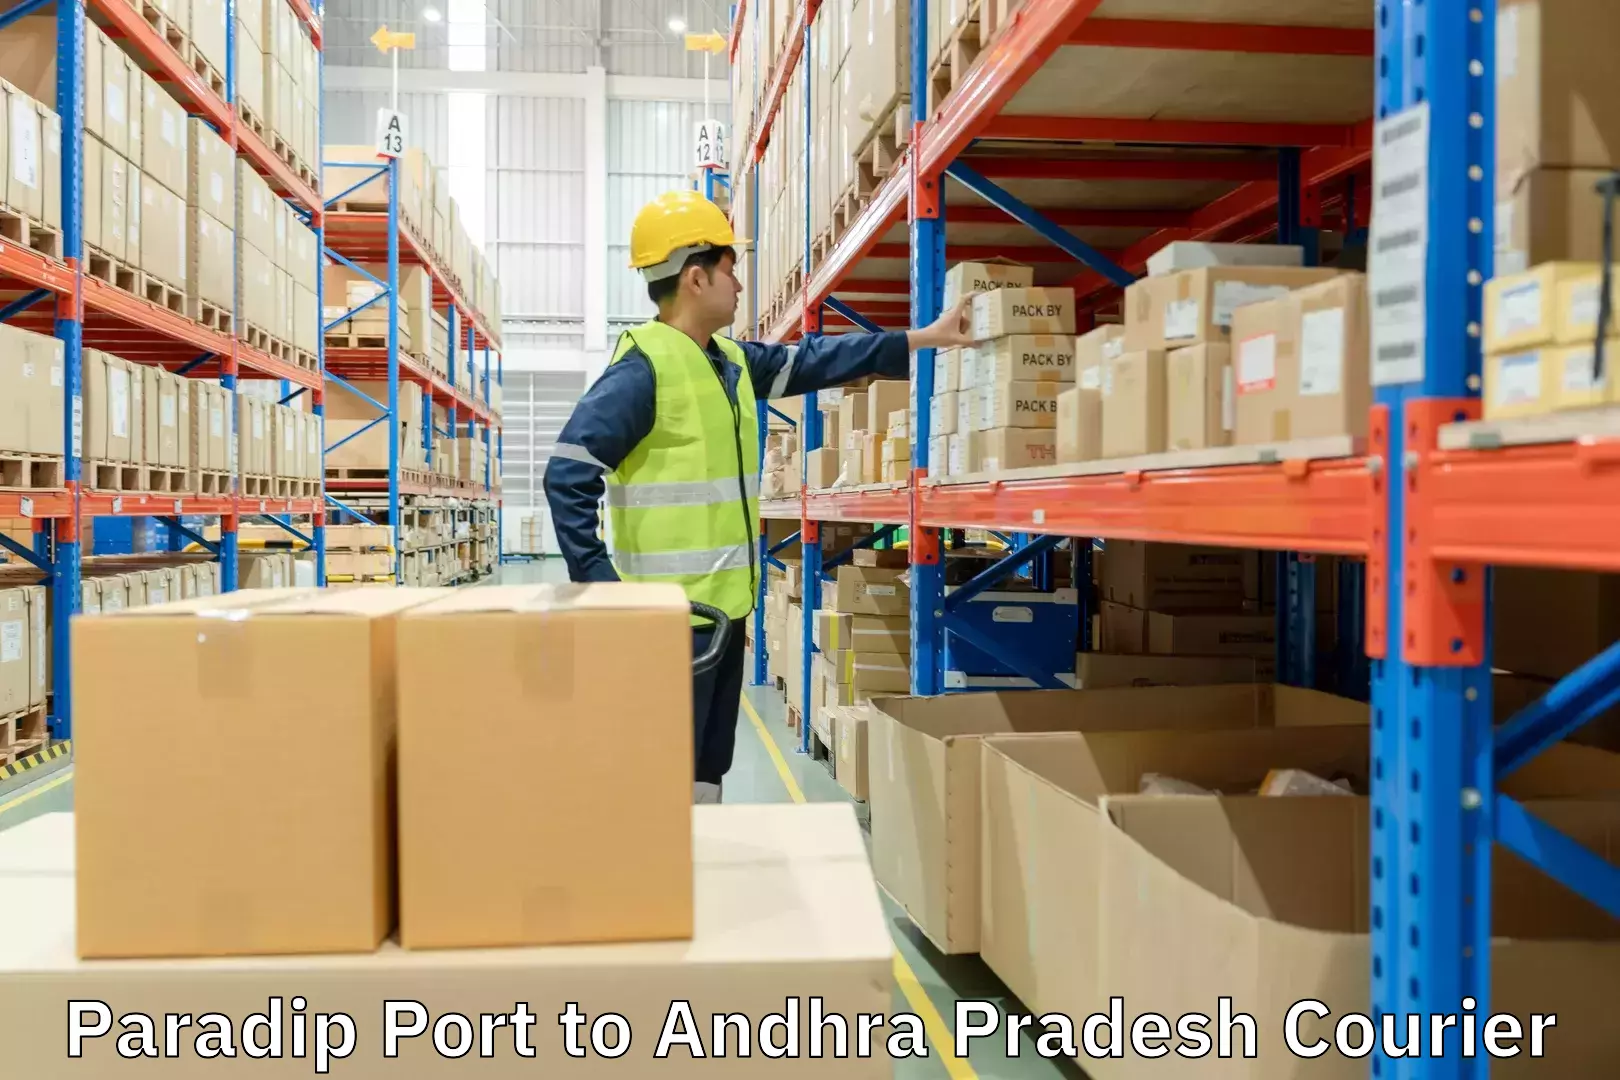 Tracking updates in Paradip Port to Andhra Pradesh